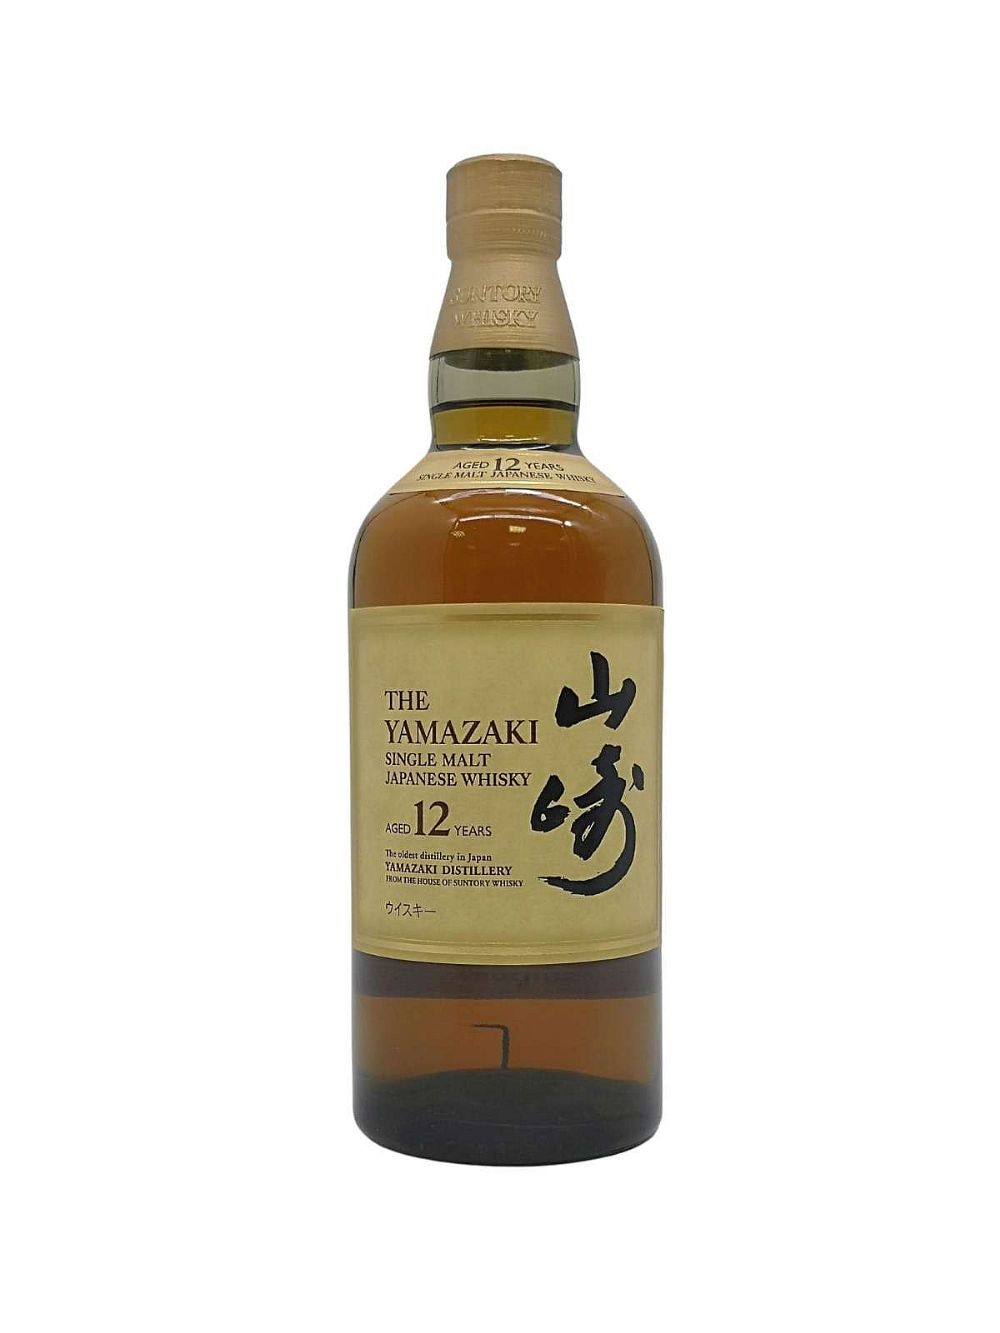 The Yamazaki 12 year old Single Malt Japanese Whiskey